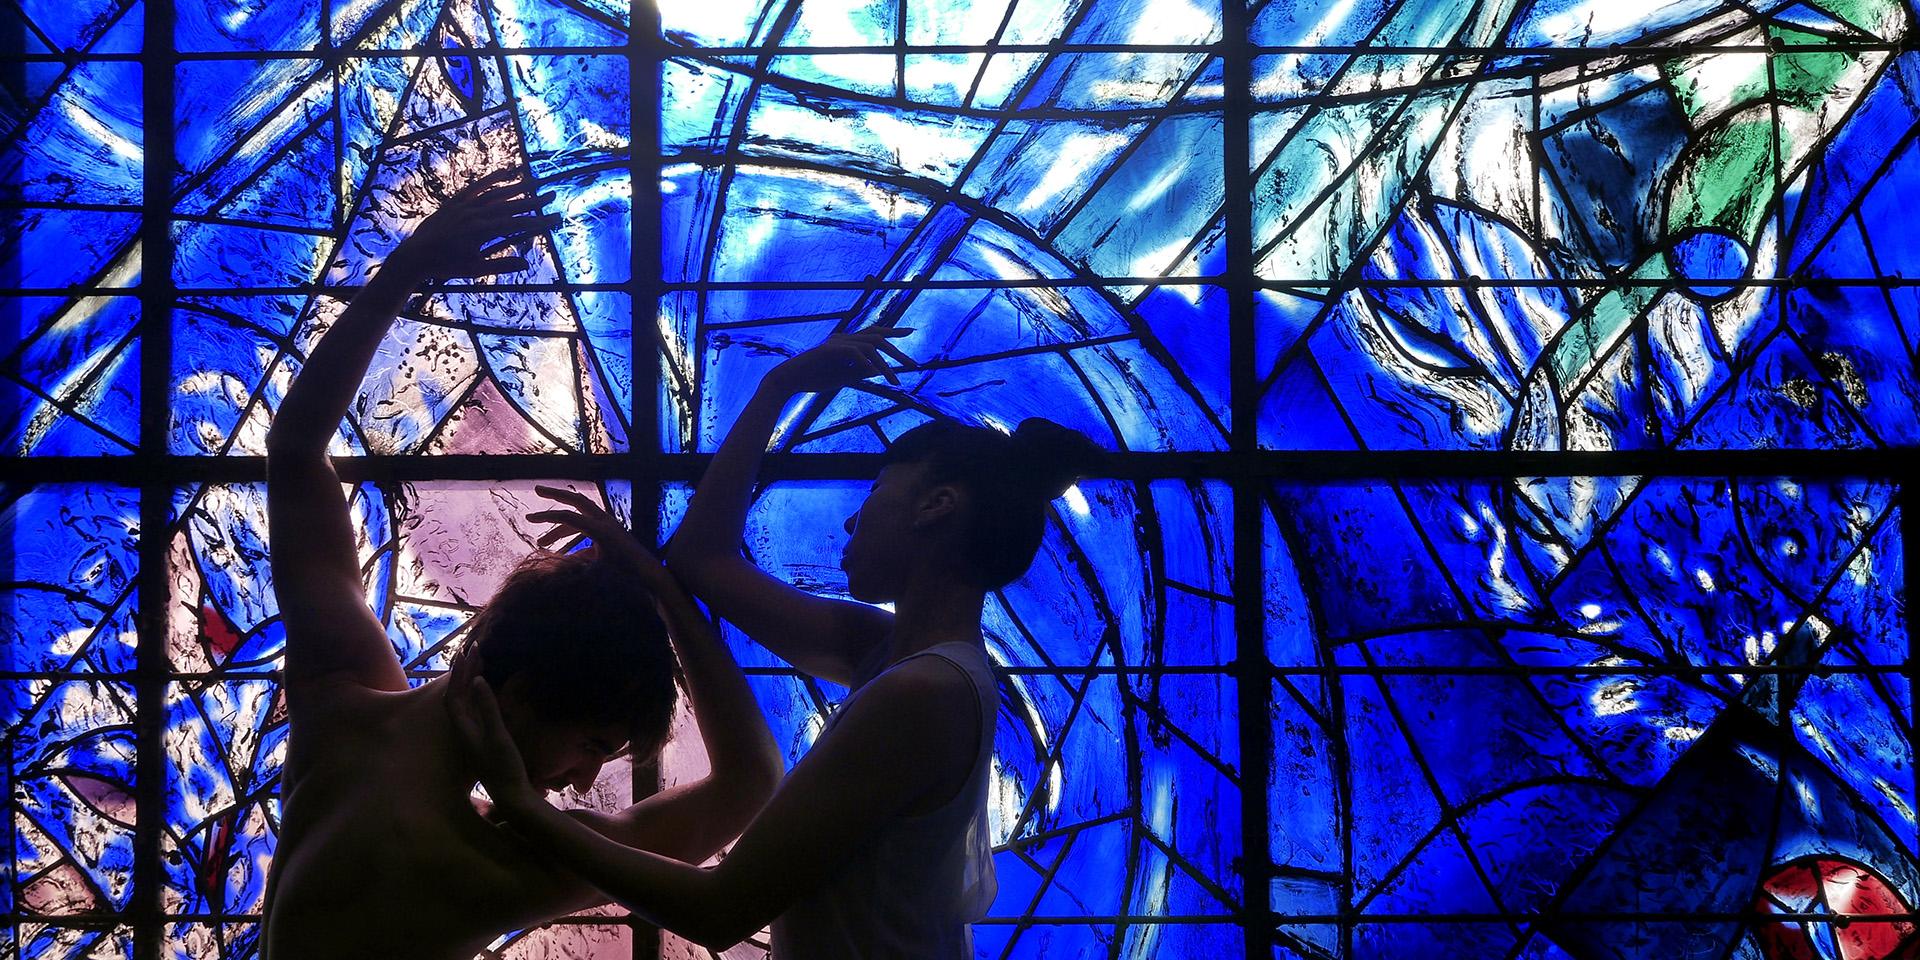 Danseurs des Ballets de Monte-Carlo devant le vitrail "La Création du monde" (détail) de Marc Chagall (1887-1985), 1971-1972, musée national Marc Chagall, Nice. Photo: Agnès Roux ©ADAGP, Paris, 2021.